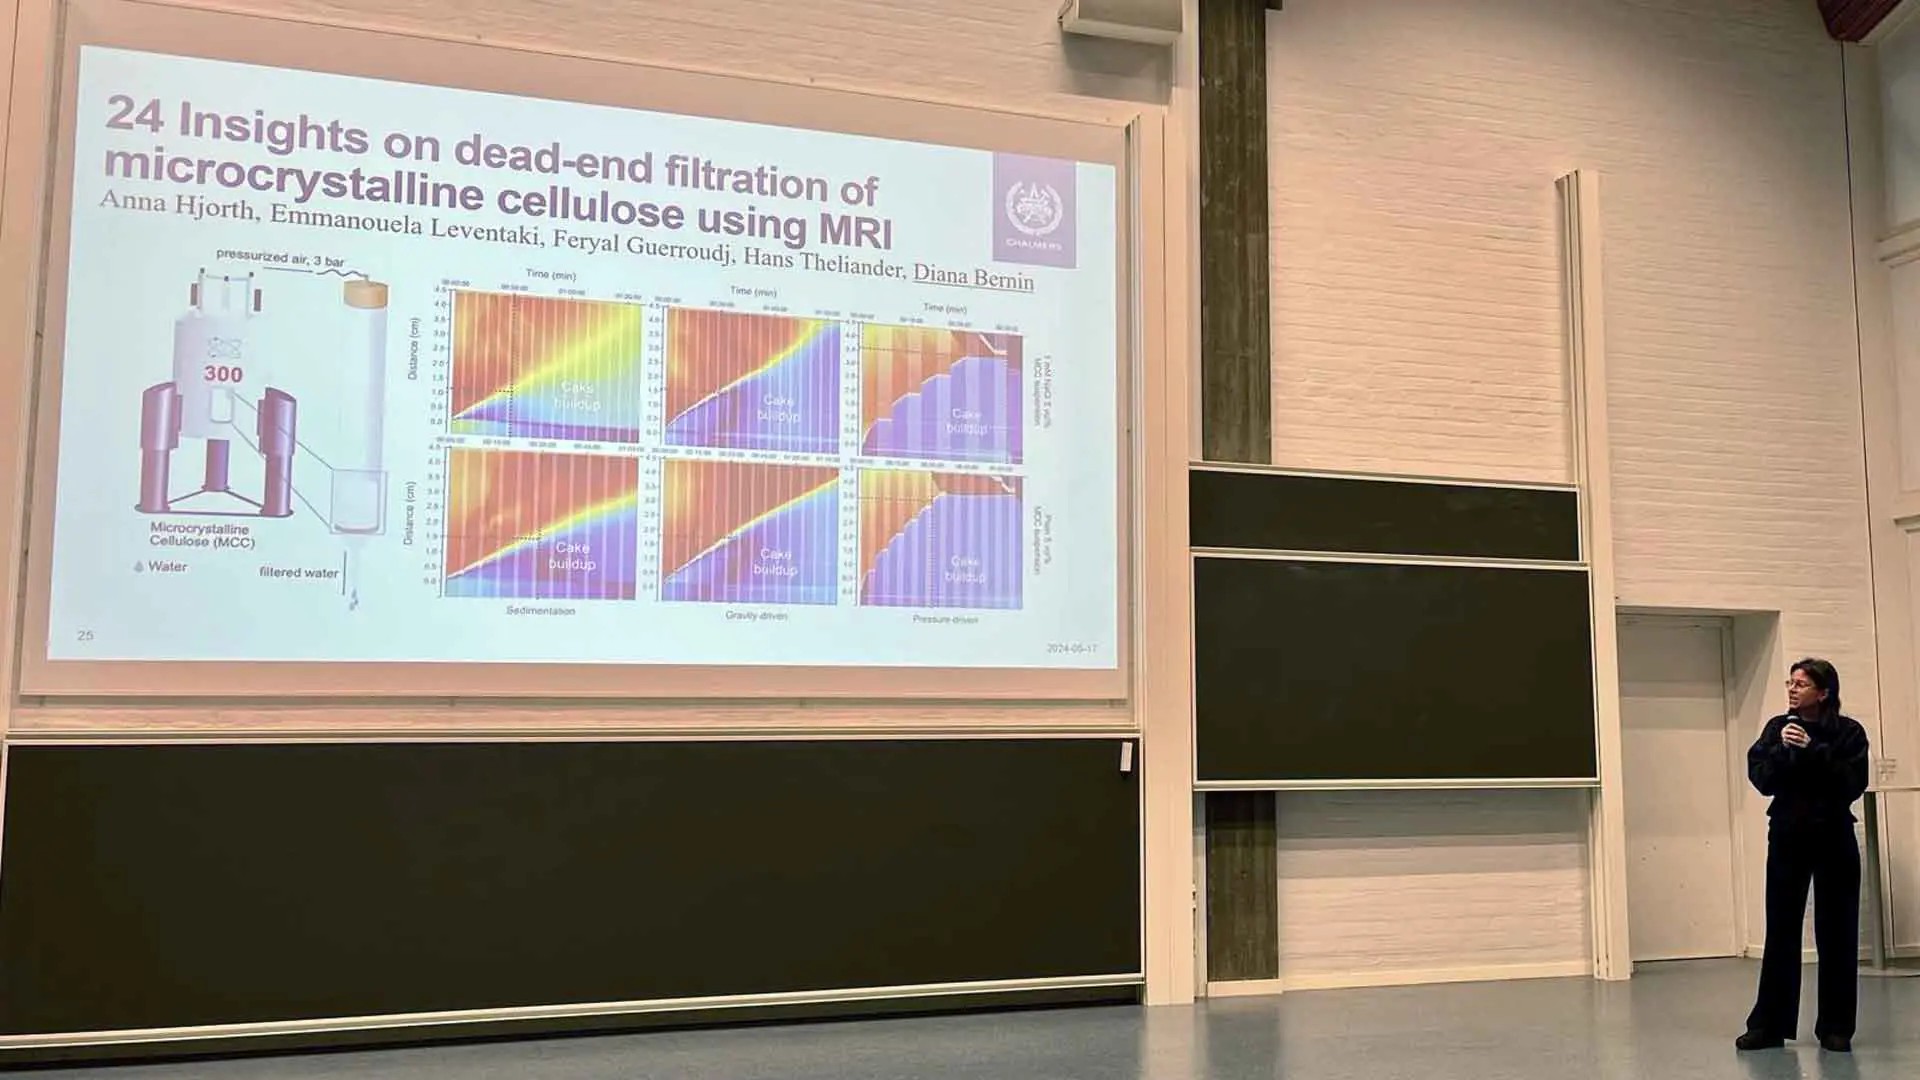 Diana Bernin presenterar sin och Emmanouela Leventakis poster: Insight om dead-end filtration of microcrystalline cellulose using MRI.